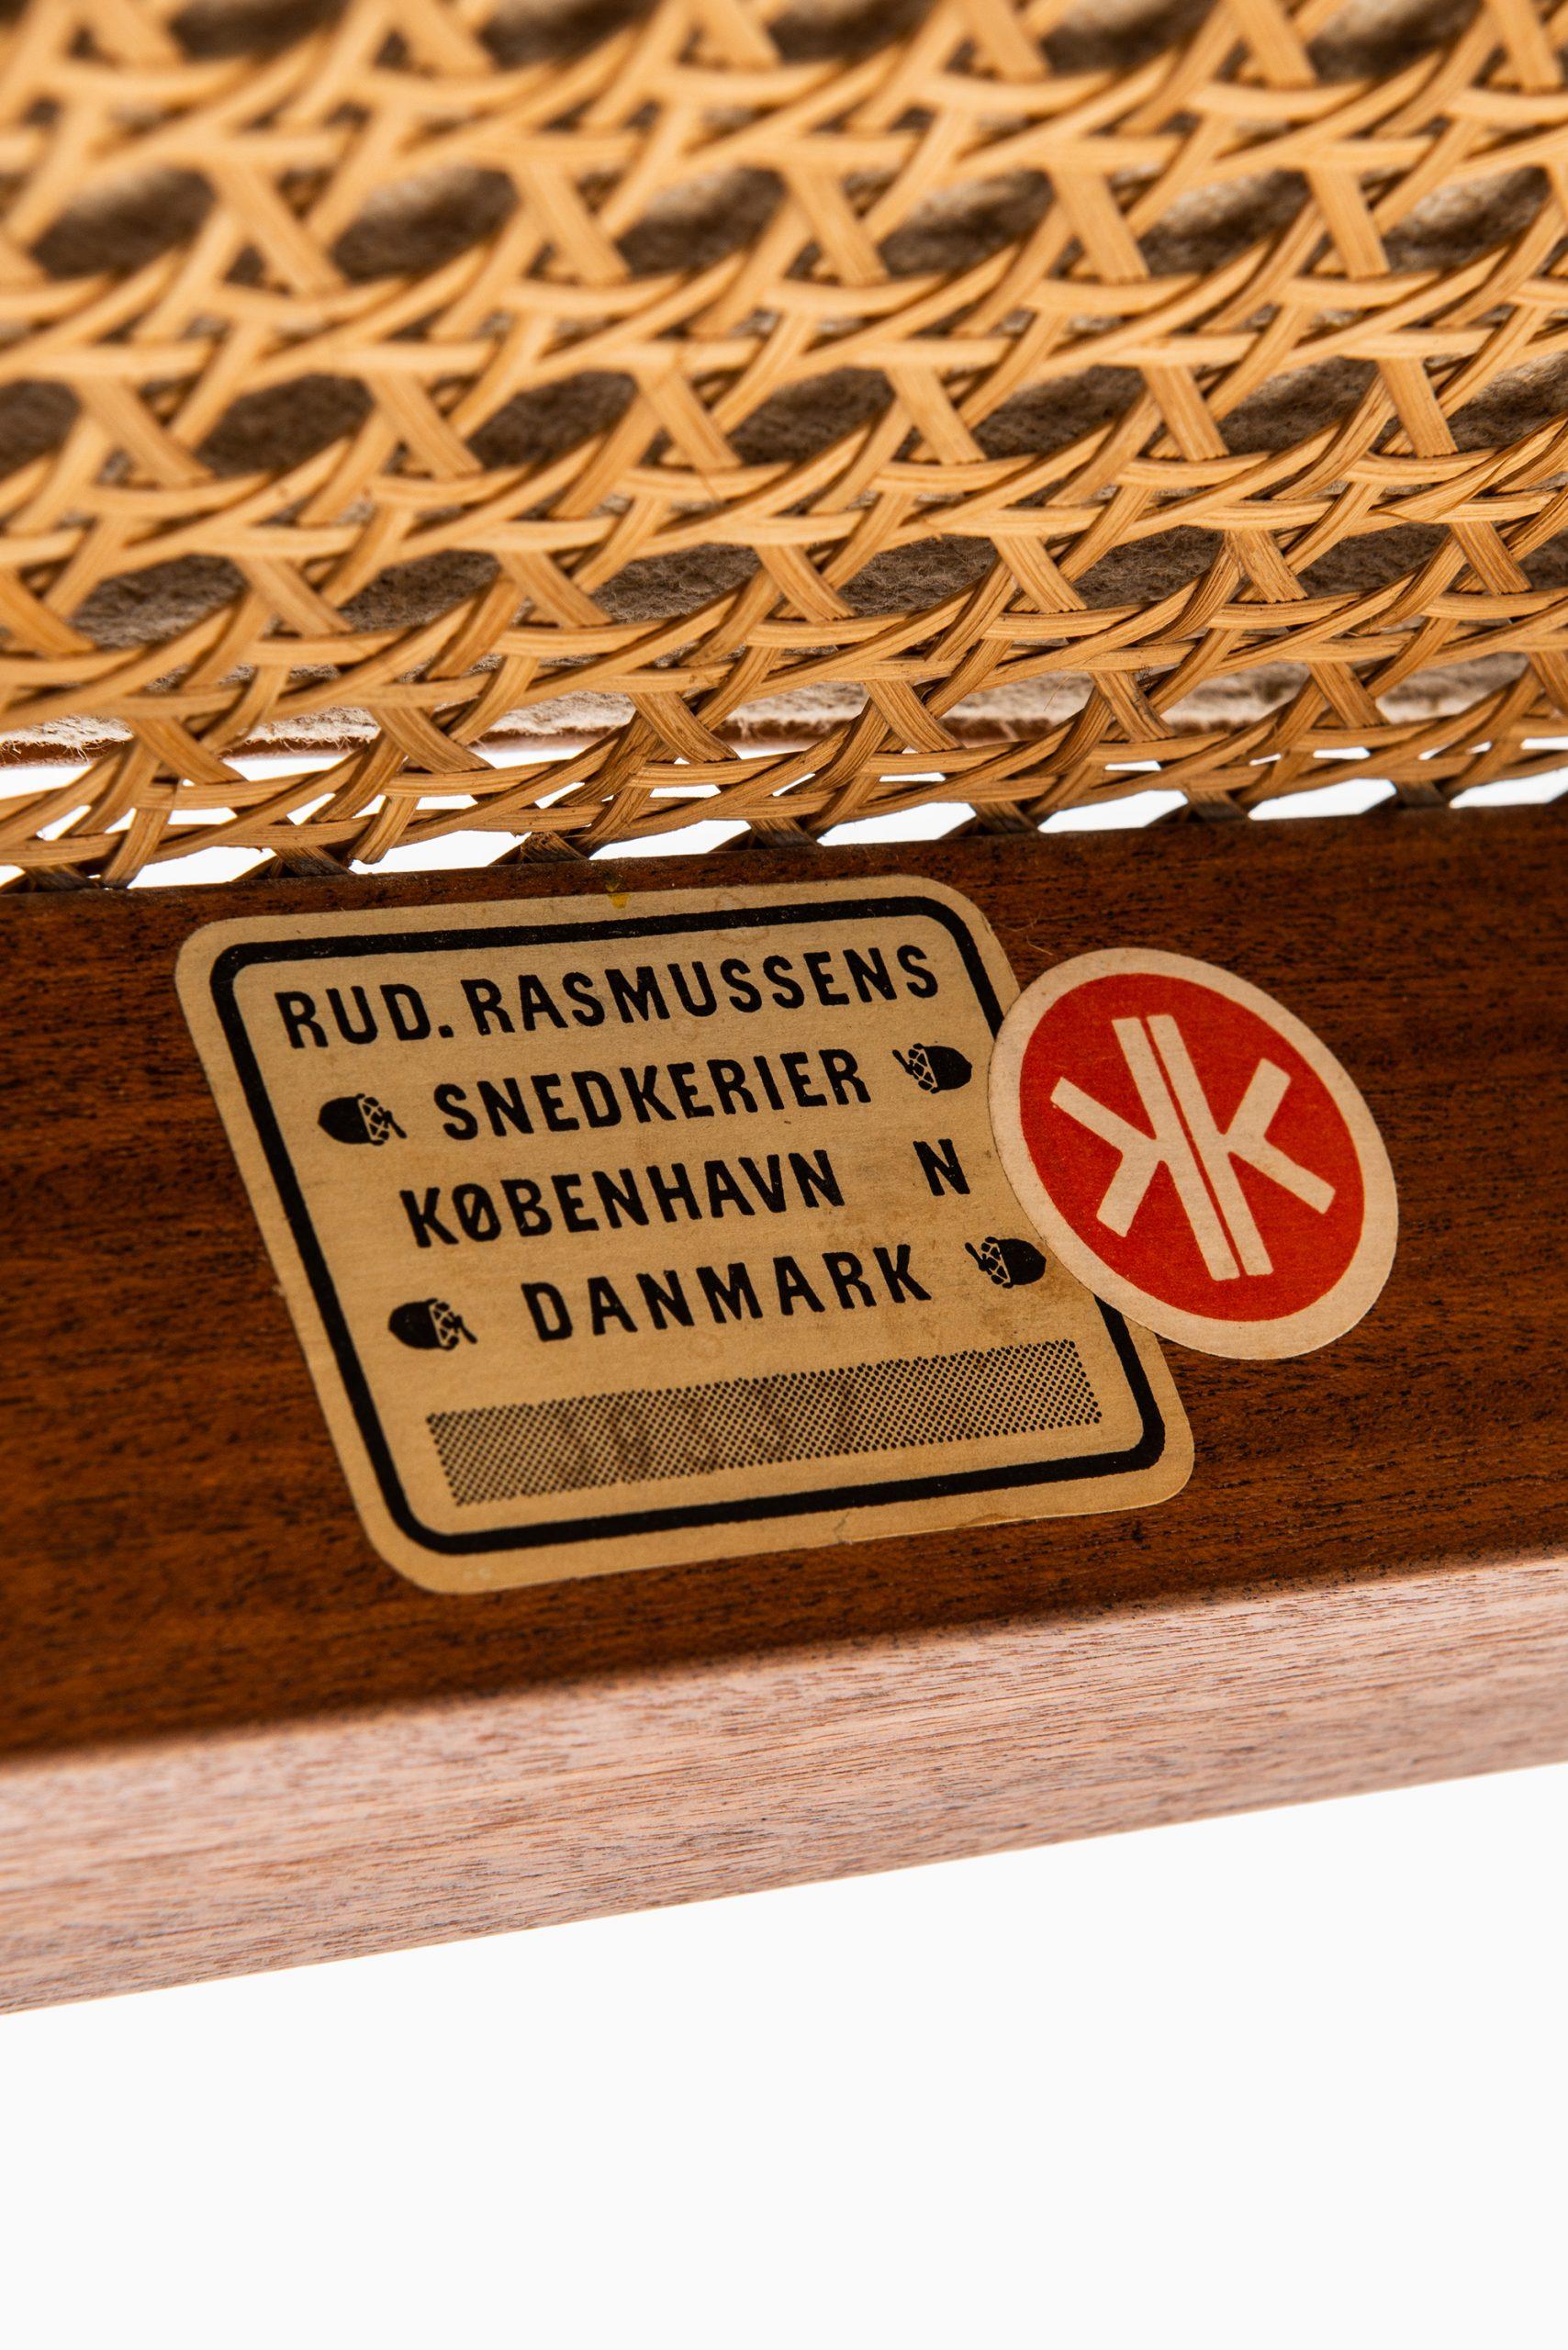 Kaare Klint Bergère / Model 4488 Easy Chairs by Rud. Rasmussen Cabinetmakers 6